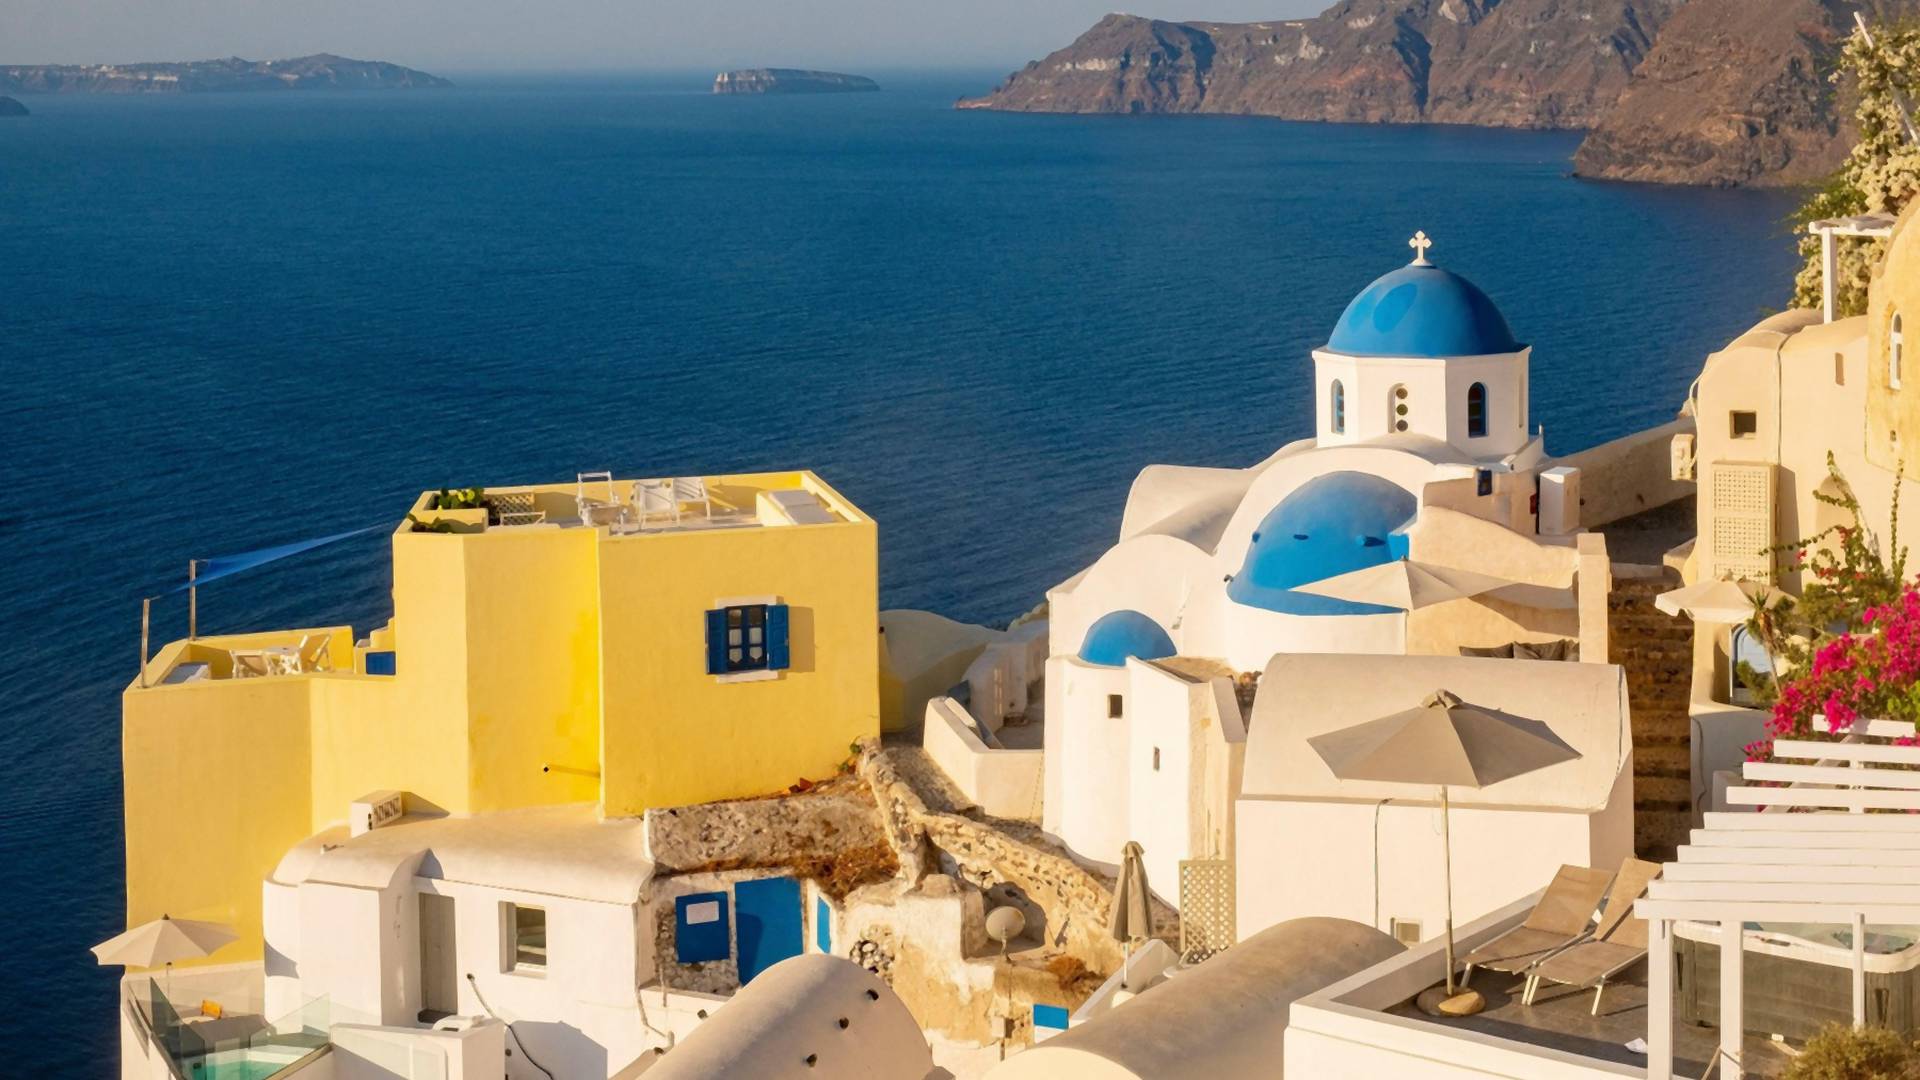 Obožavamo belo-plave fasade u Grkoj, a nemamo pojma da se iza njih krije jeziva priča povezana sa epidemijom